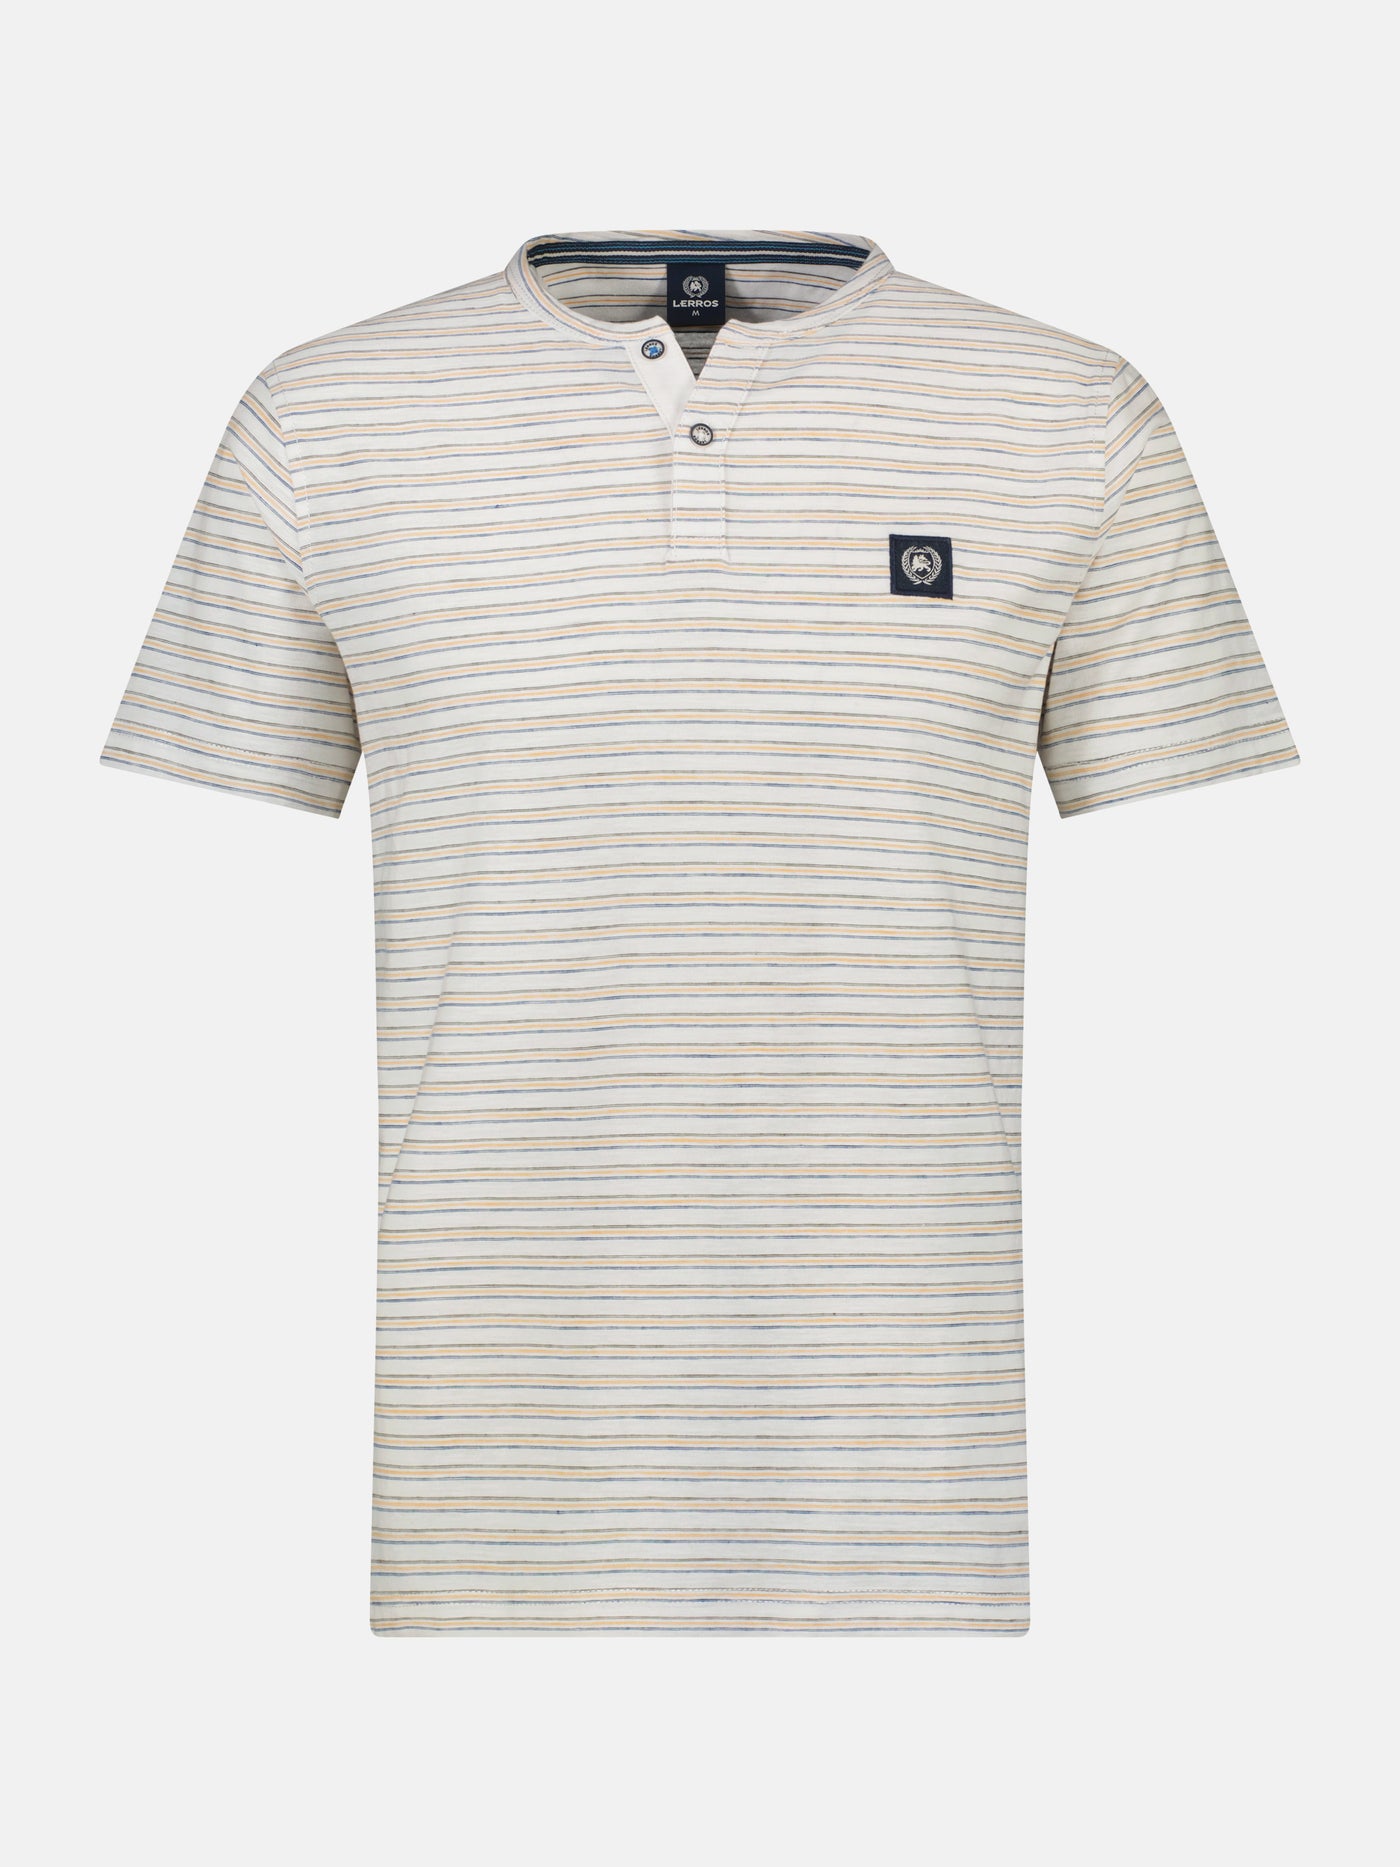 Men's Serafino shirt, striped